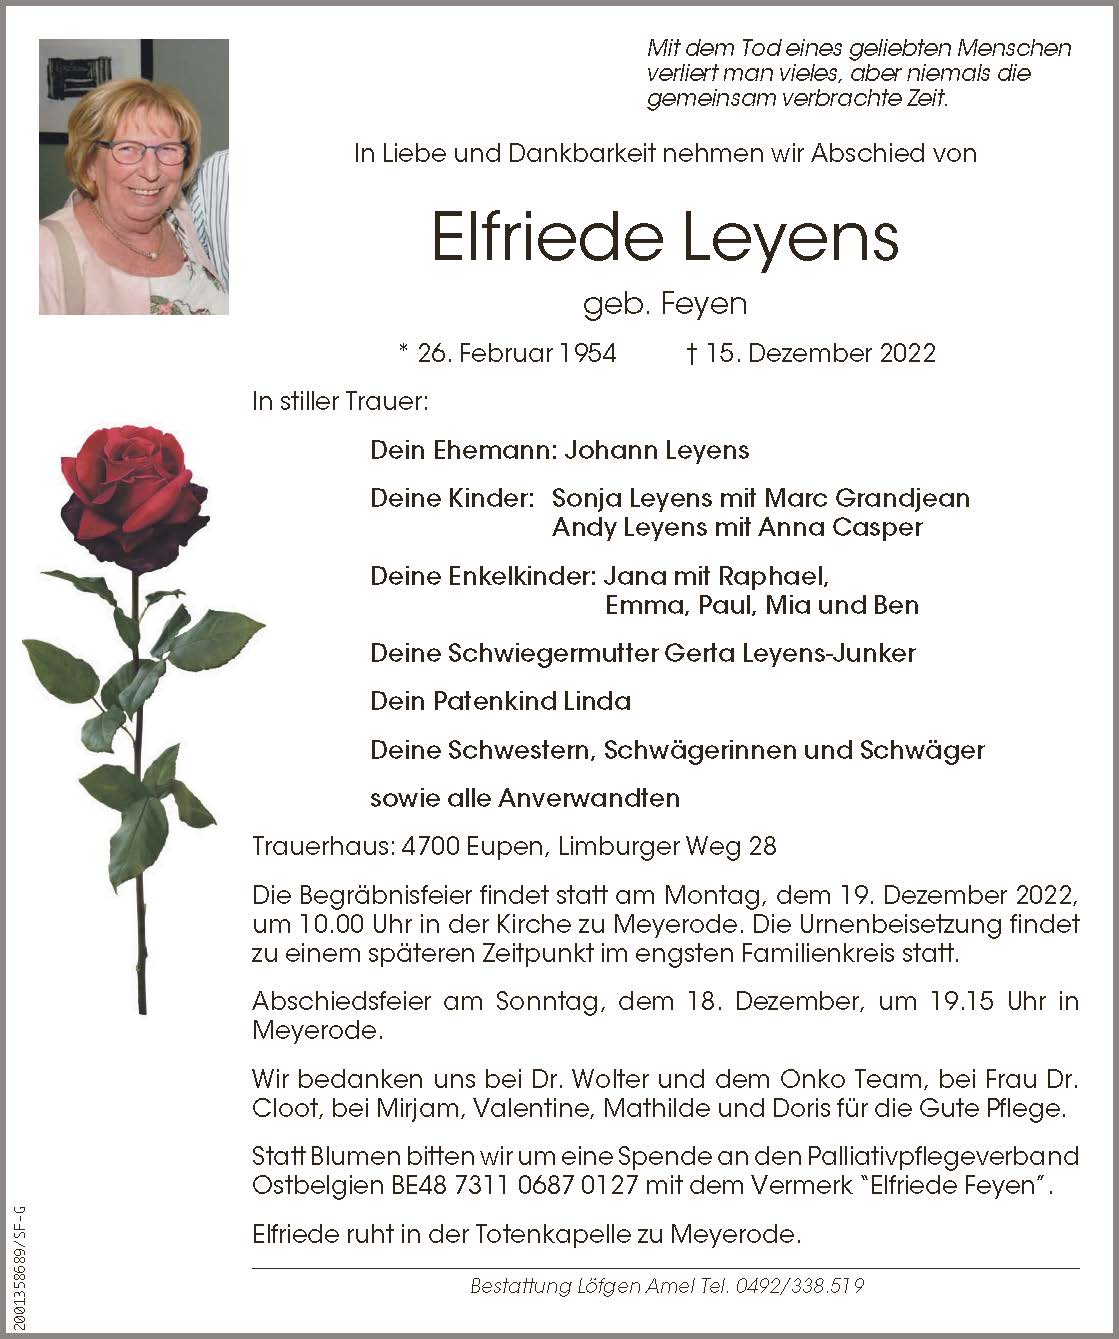 Elfriede Leyens